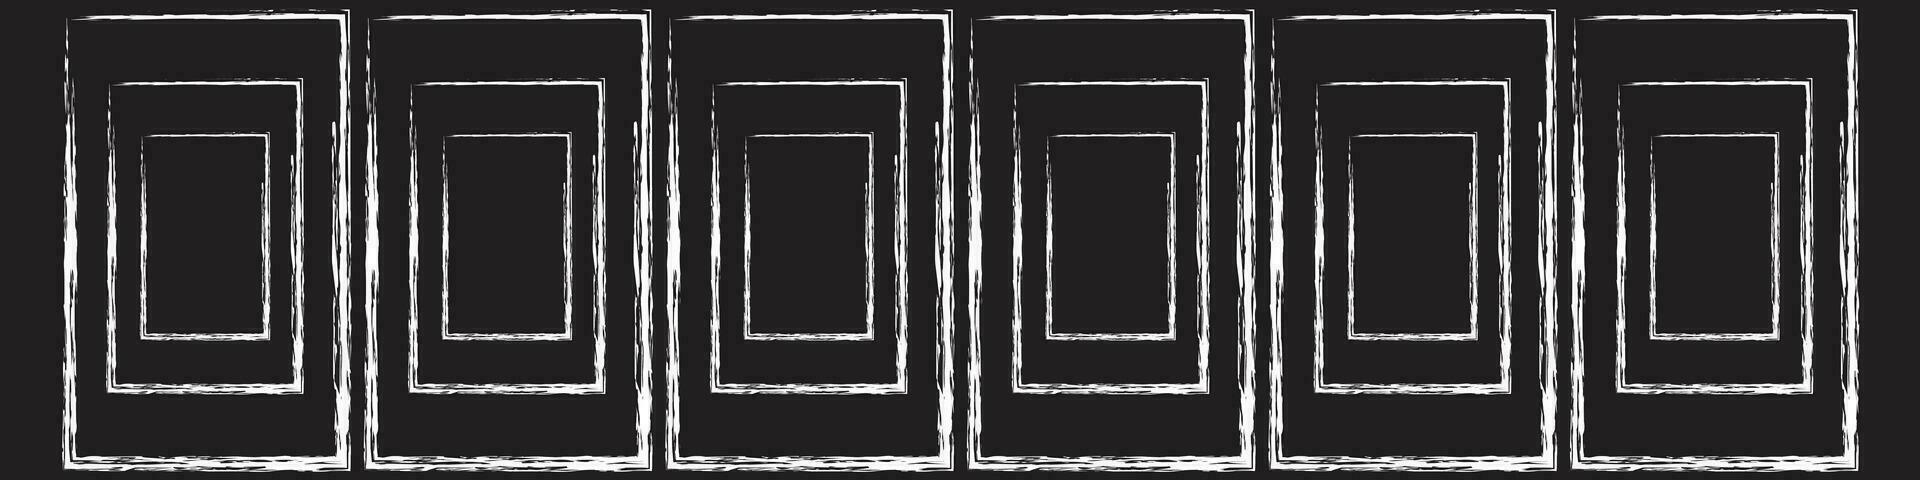 grunge cuadrado y rectángulo marcos tinta vacío negro cajas colocar. rectángulo fronteras colecciones caucho cuadrado sello imprimir. vector ilustración aislado en blanco antecedentes.